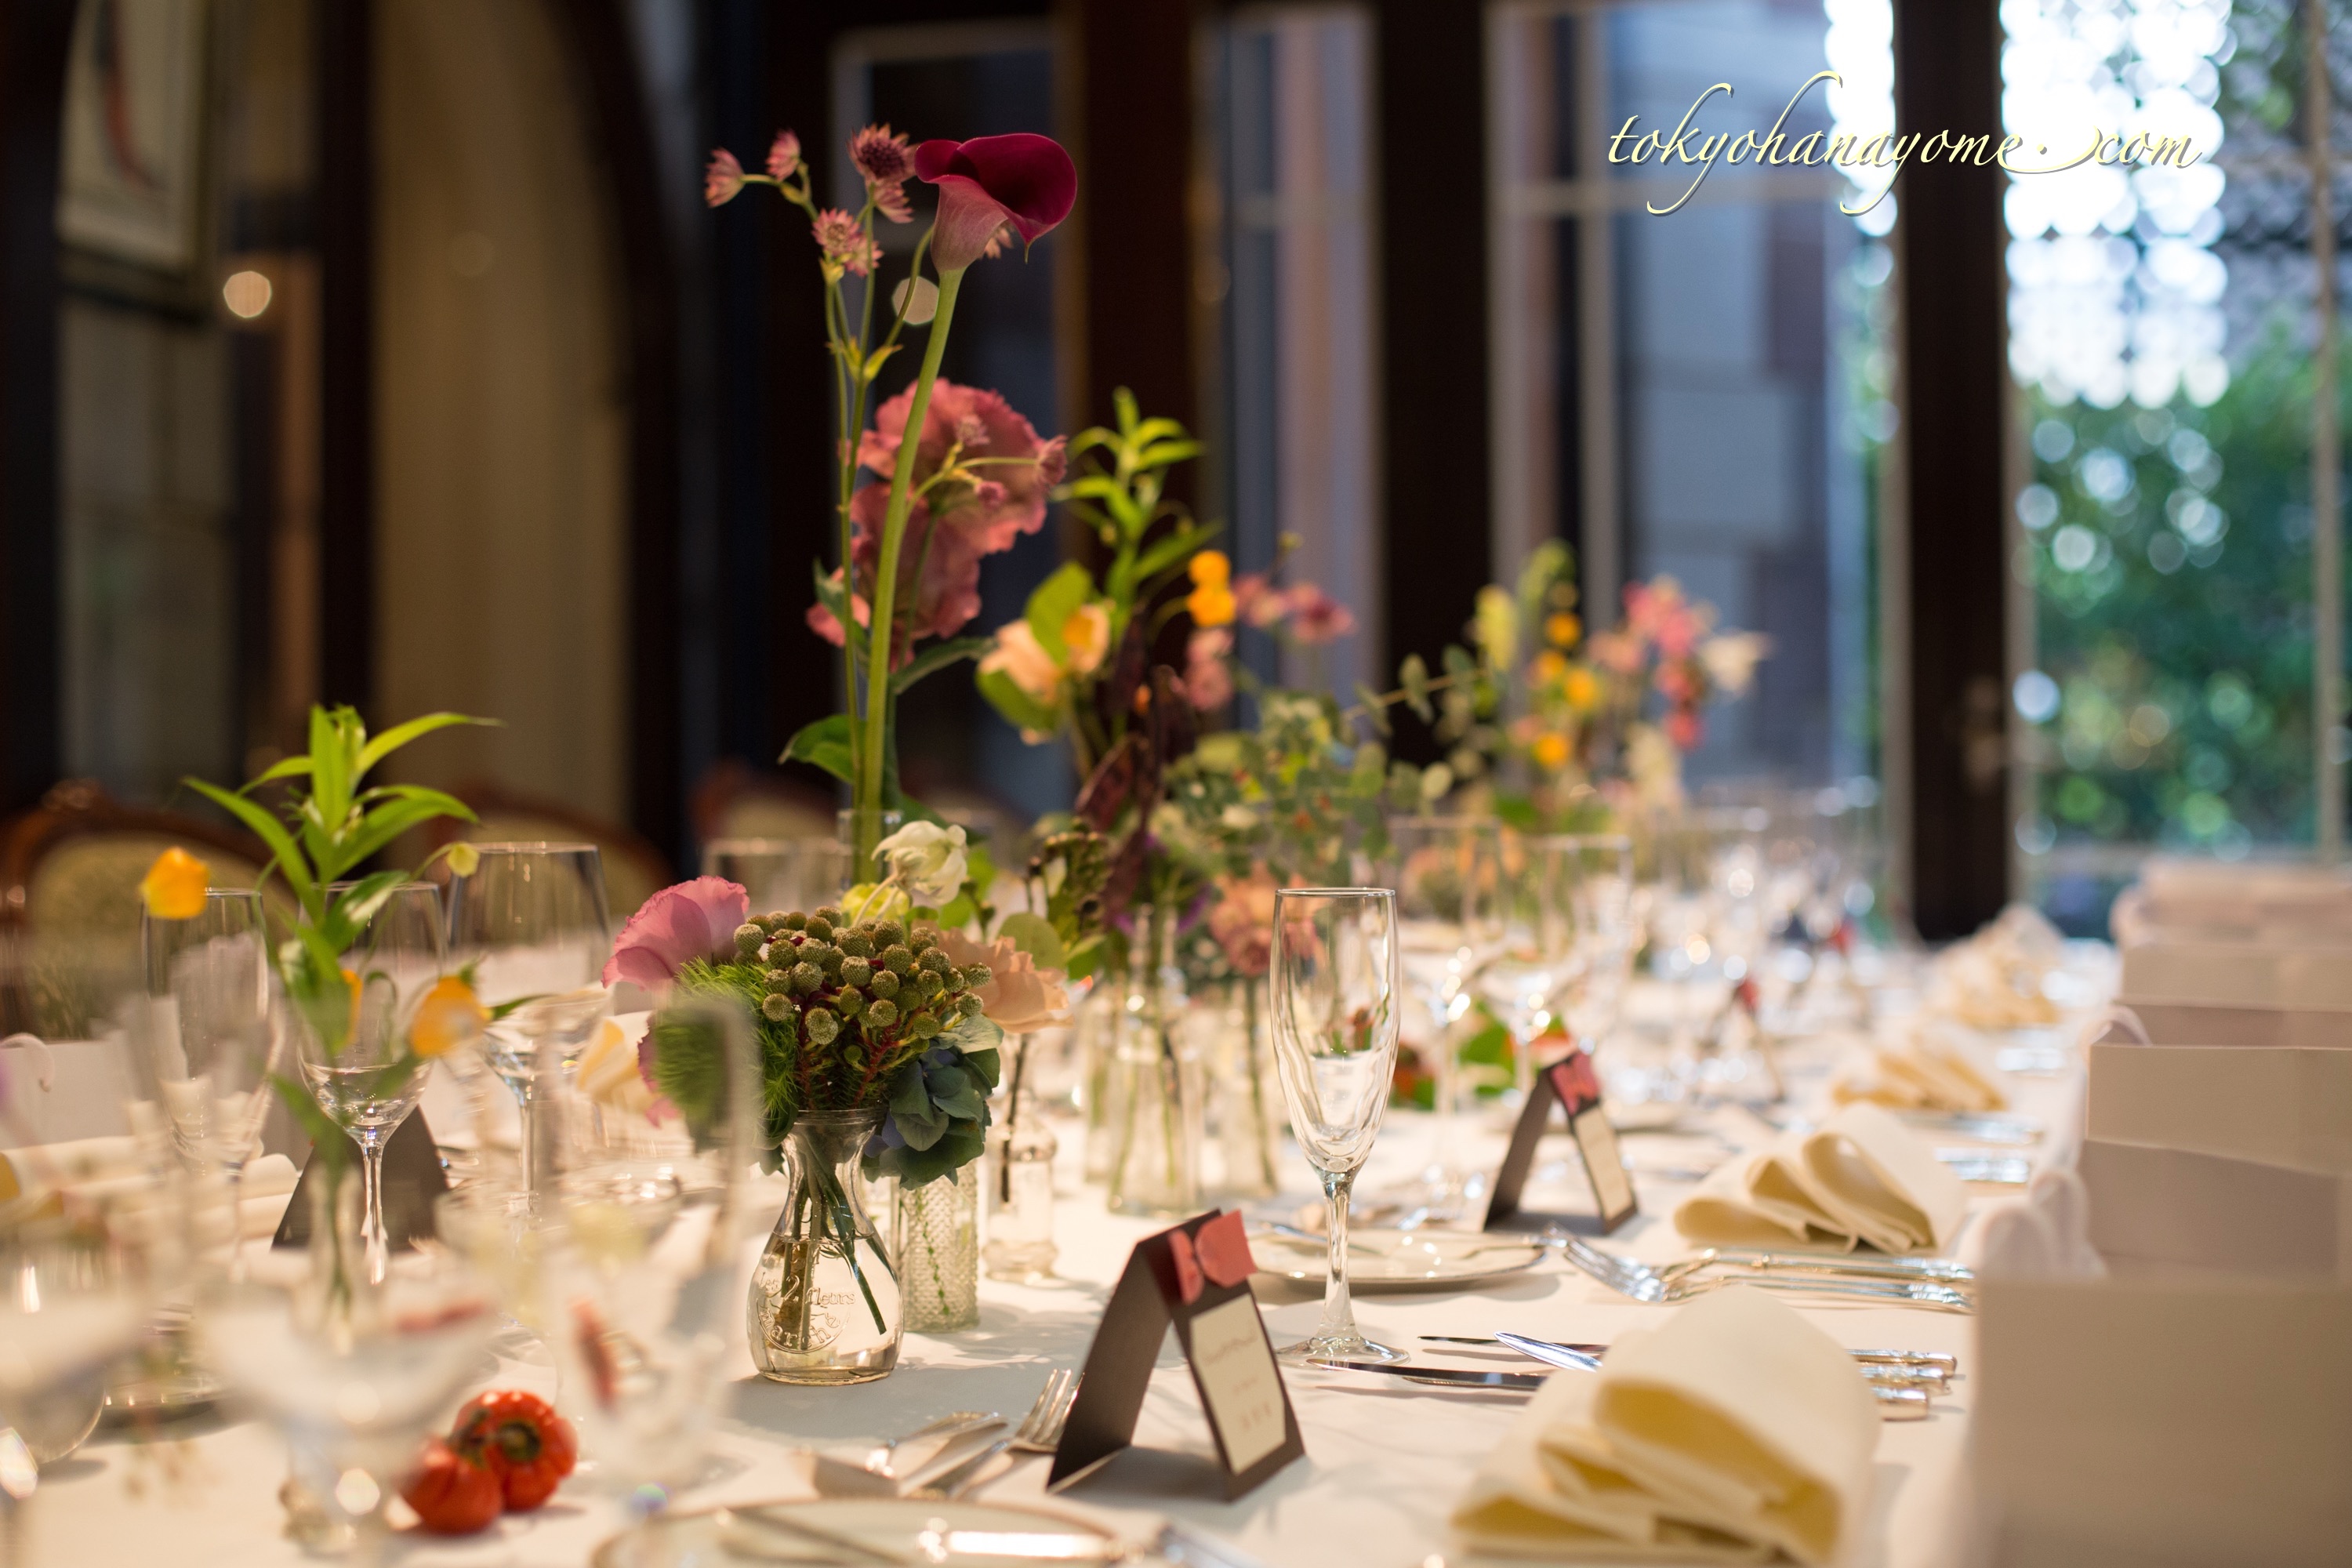 会場装花 打ち合わせから当日のテーブルコーディネートまで写真付きで紹介します 秋婚レストラン ウェディング 結婚式 準備のことなら東京ハナヨメブログ